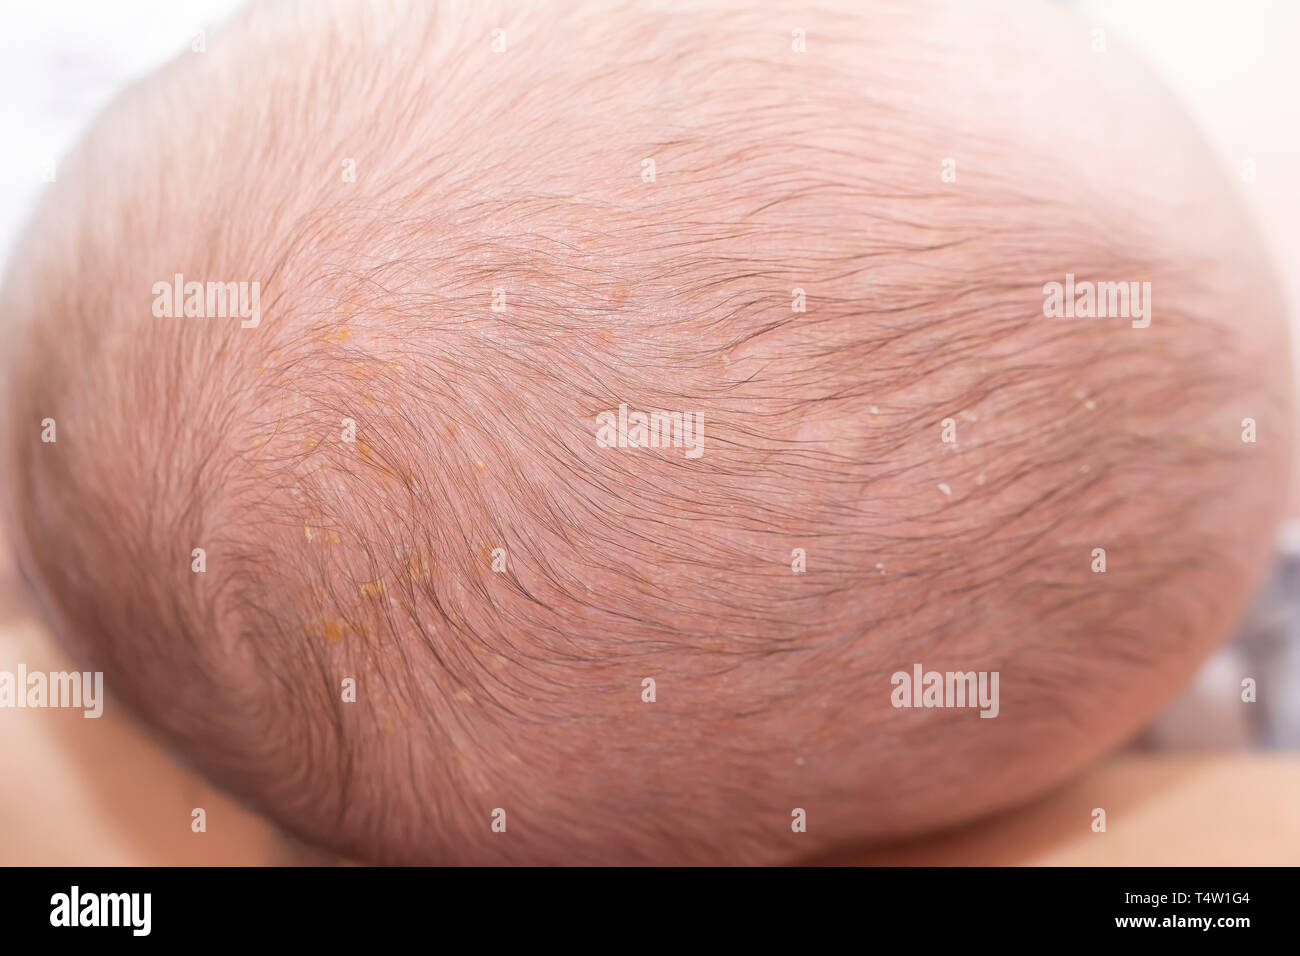 Neugeborene Kopf mit Aufnahmevorrichtung Kappe oder infantile seborrhoische Dermatitis. Neugeborene Kopf mit seborrhoe. Stockfoto